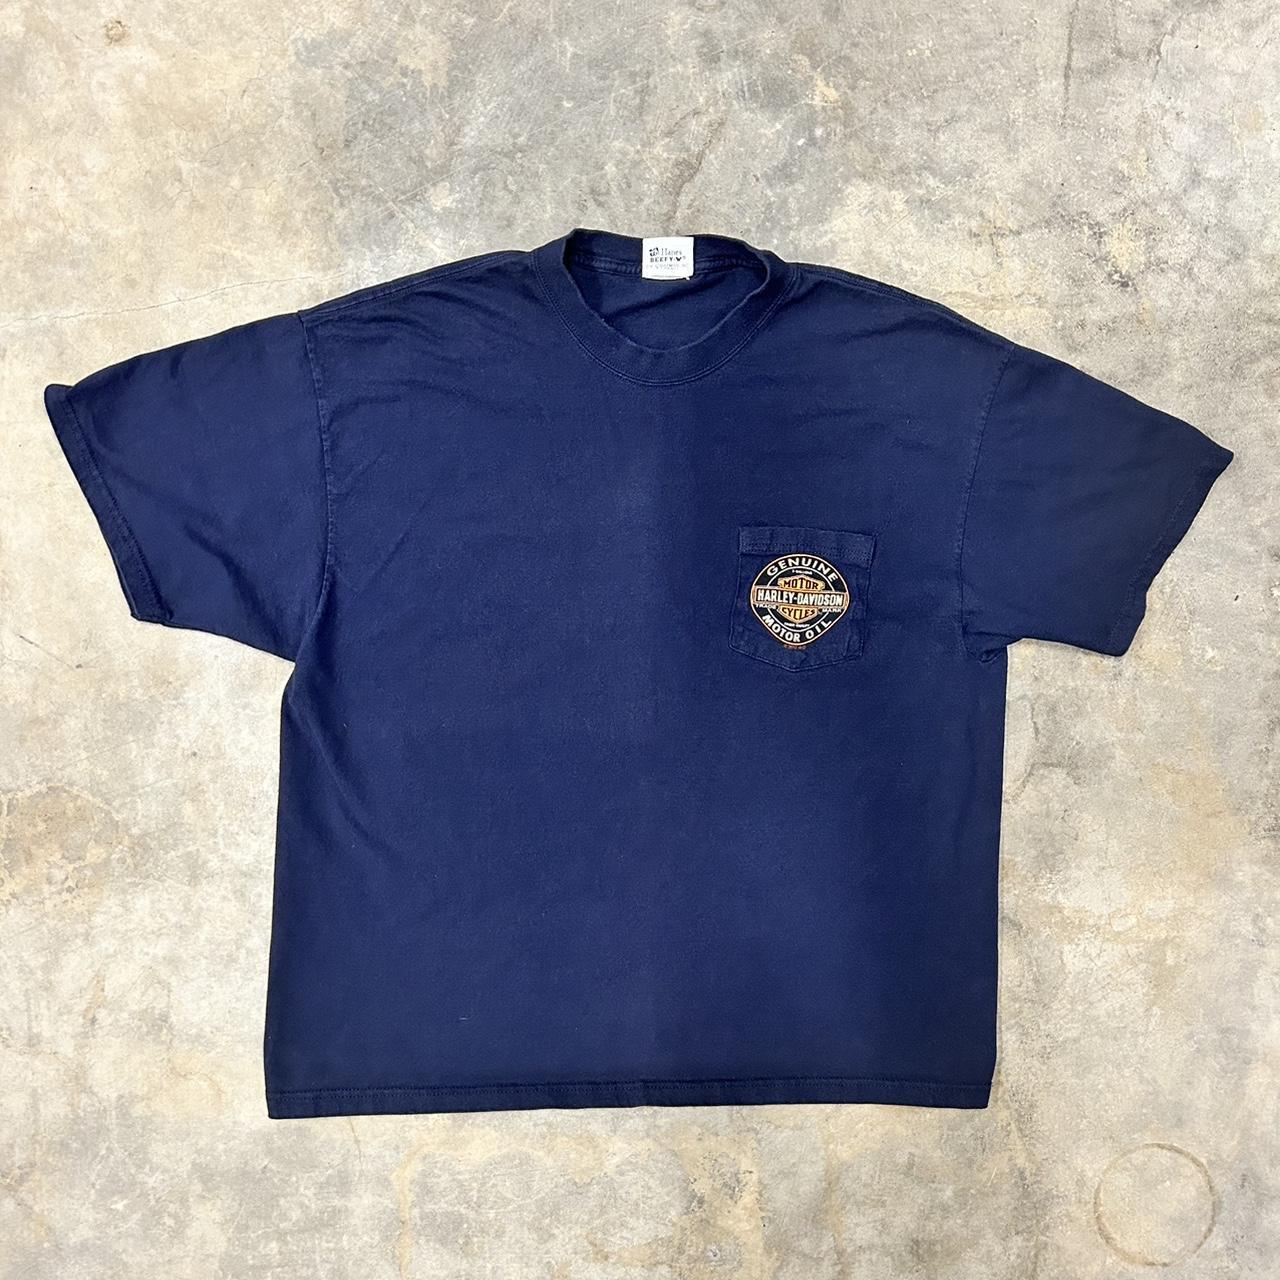 Vintage navy blue harley davidson pocket t shirt.... - Depop